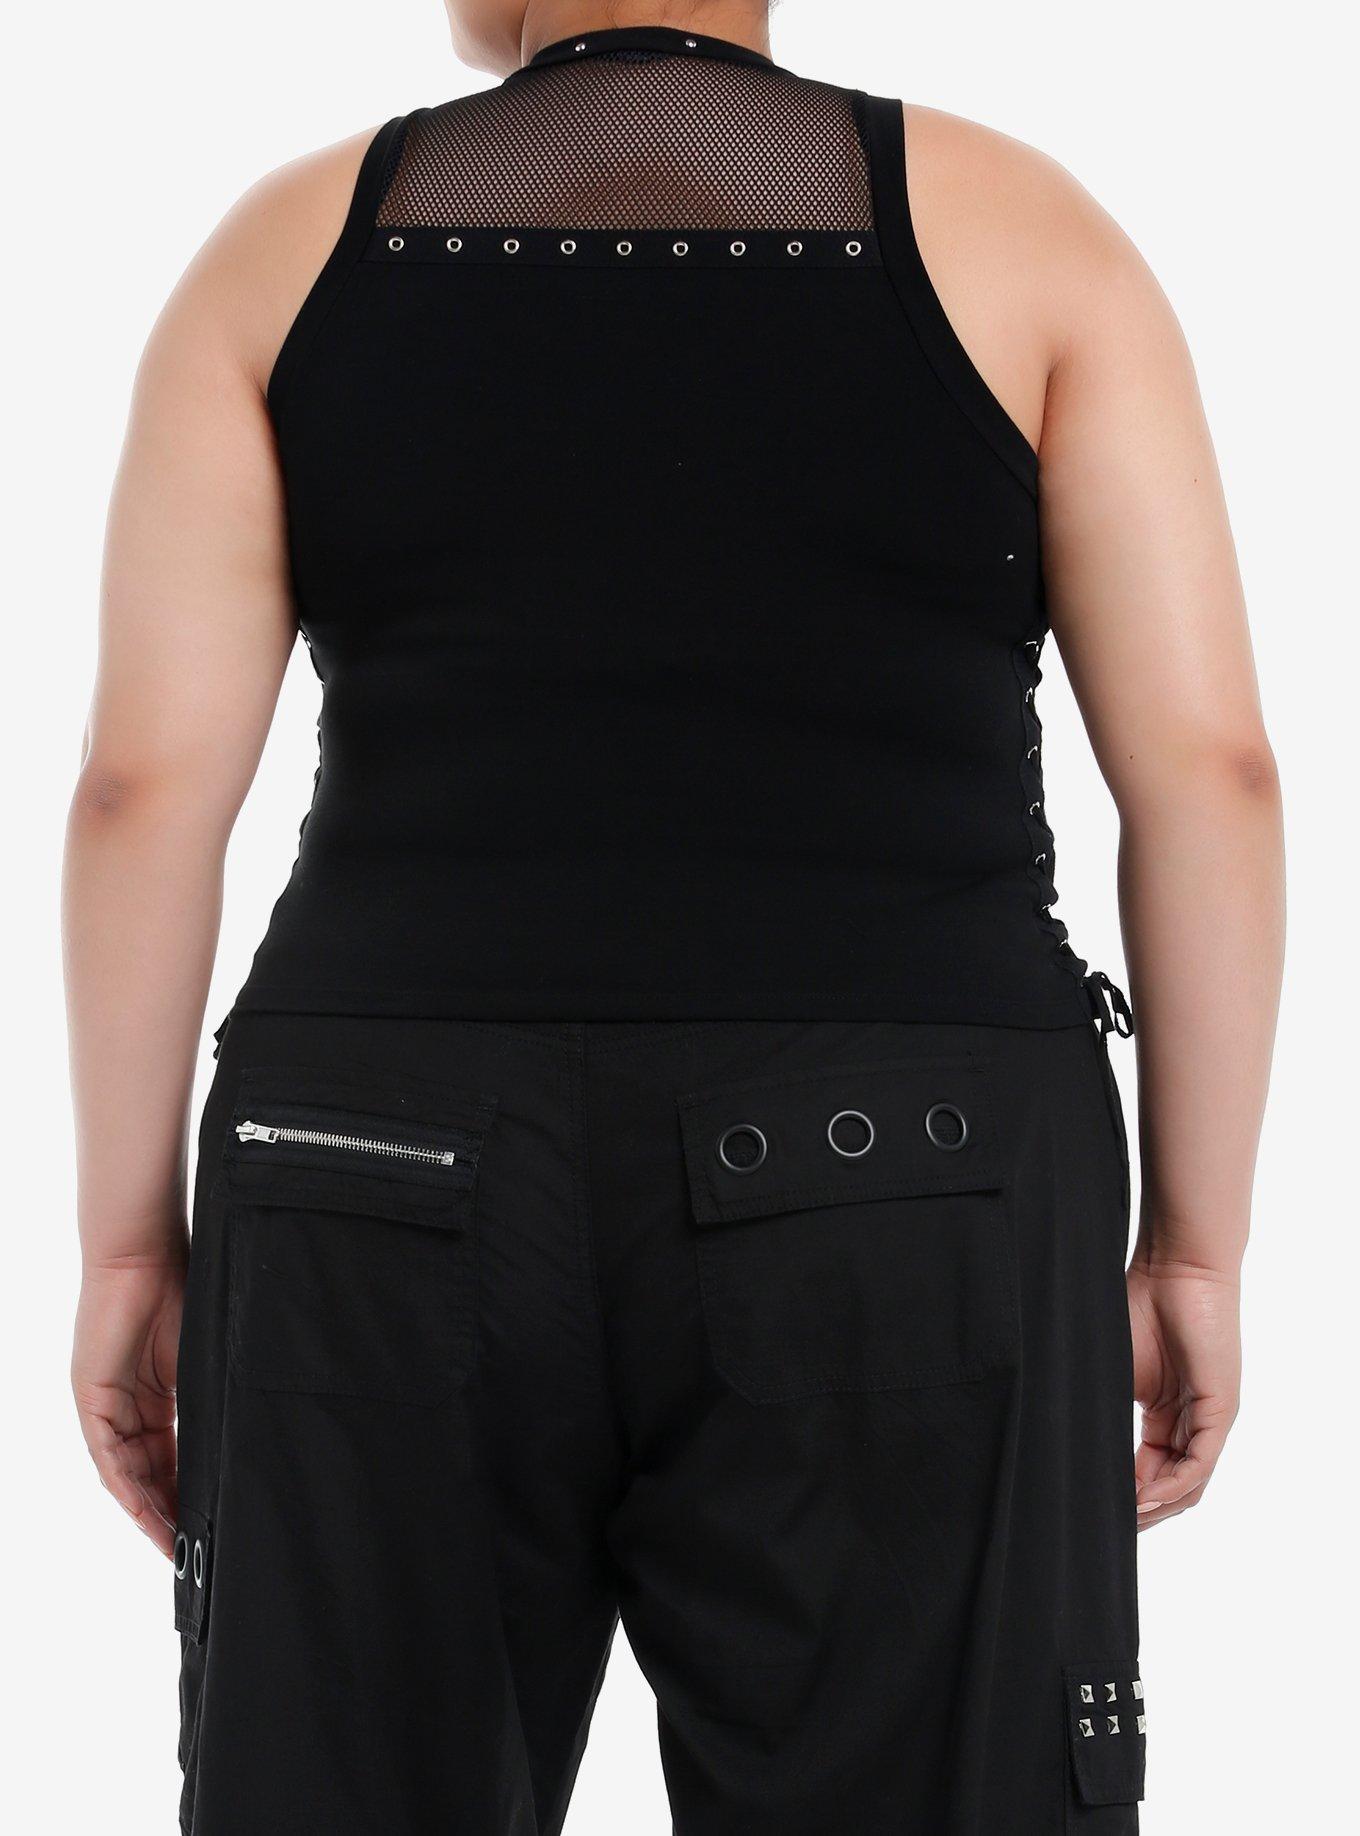 Social Collision Fishnet Grommet Lace-Up Girls Tank Top Plus Size, BLACK, alternate